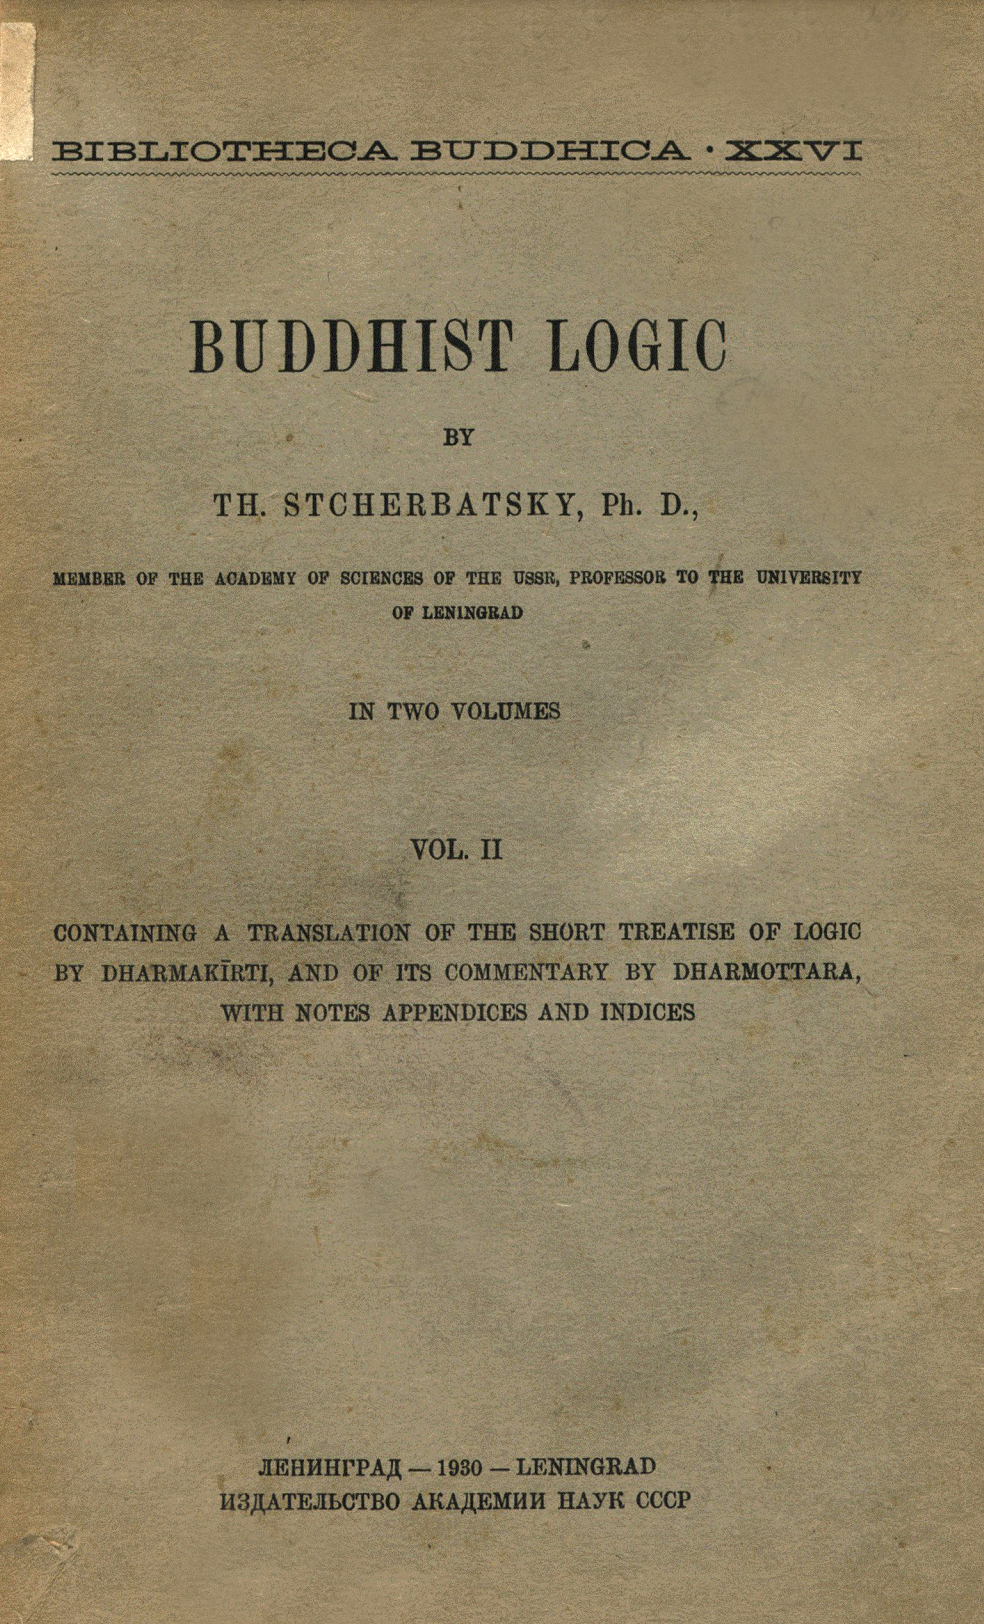 Stcherbatsky-1930-Buddhist Logic Vol 2-front.jpg